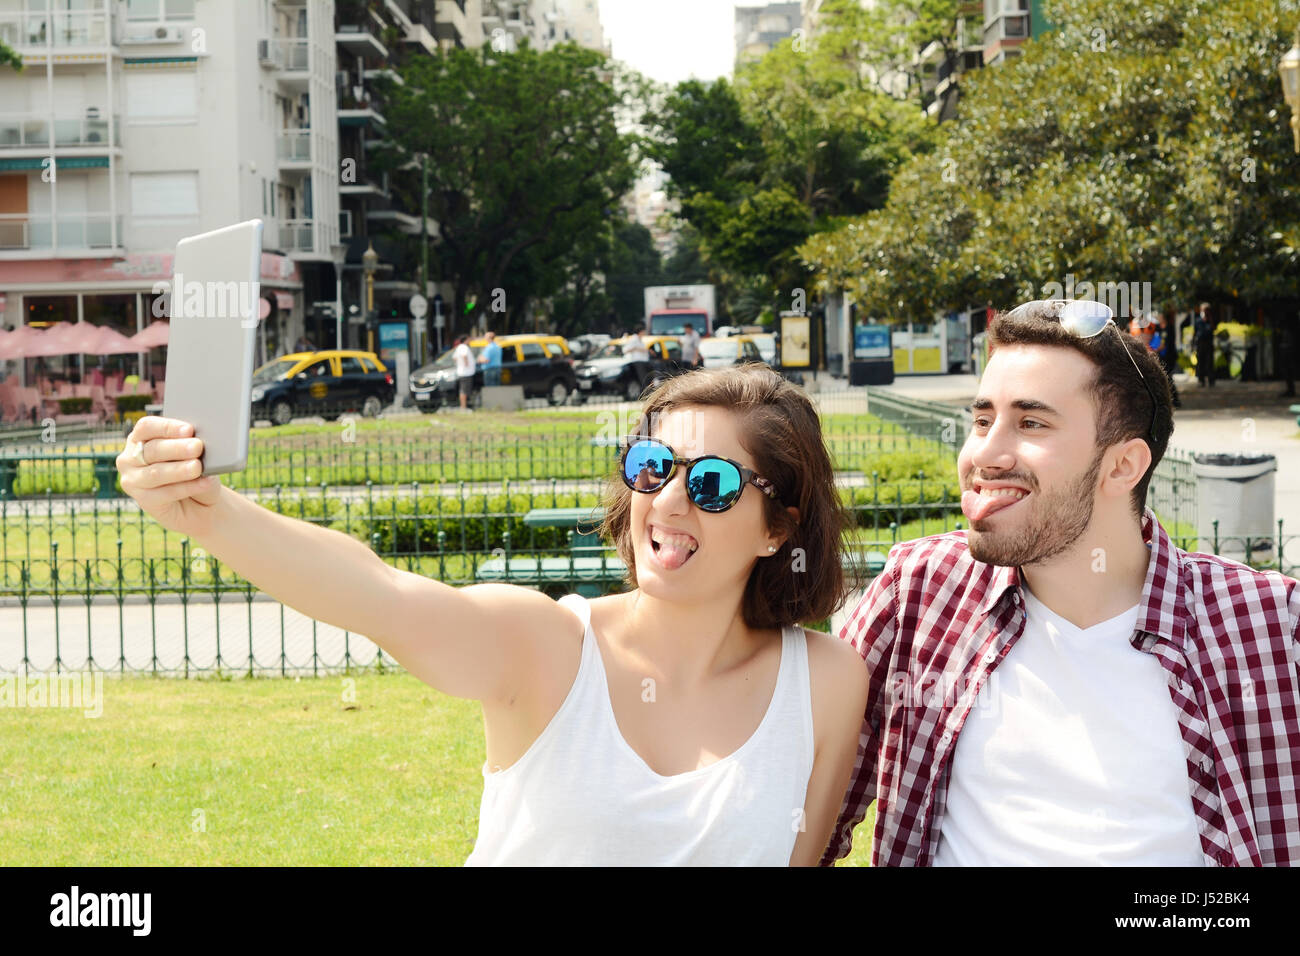 Ritratto di una giovane bella giovane tenendo selfie con tavoletta digitale. All'esterno. Foto Stock